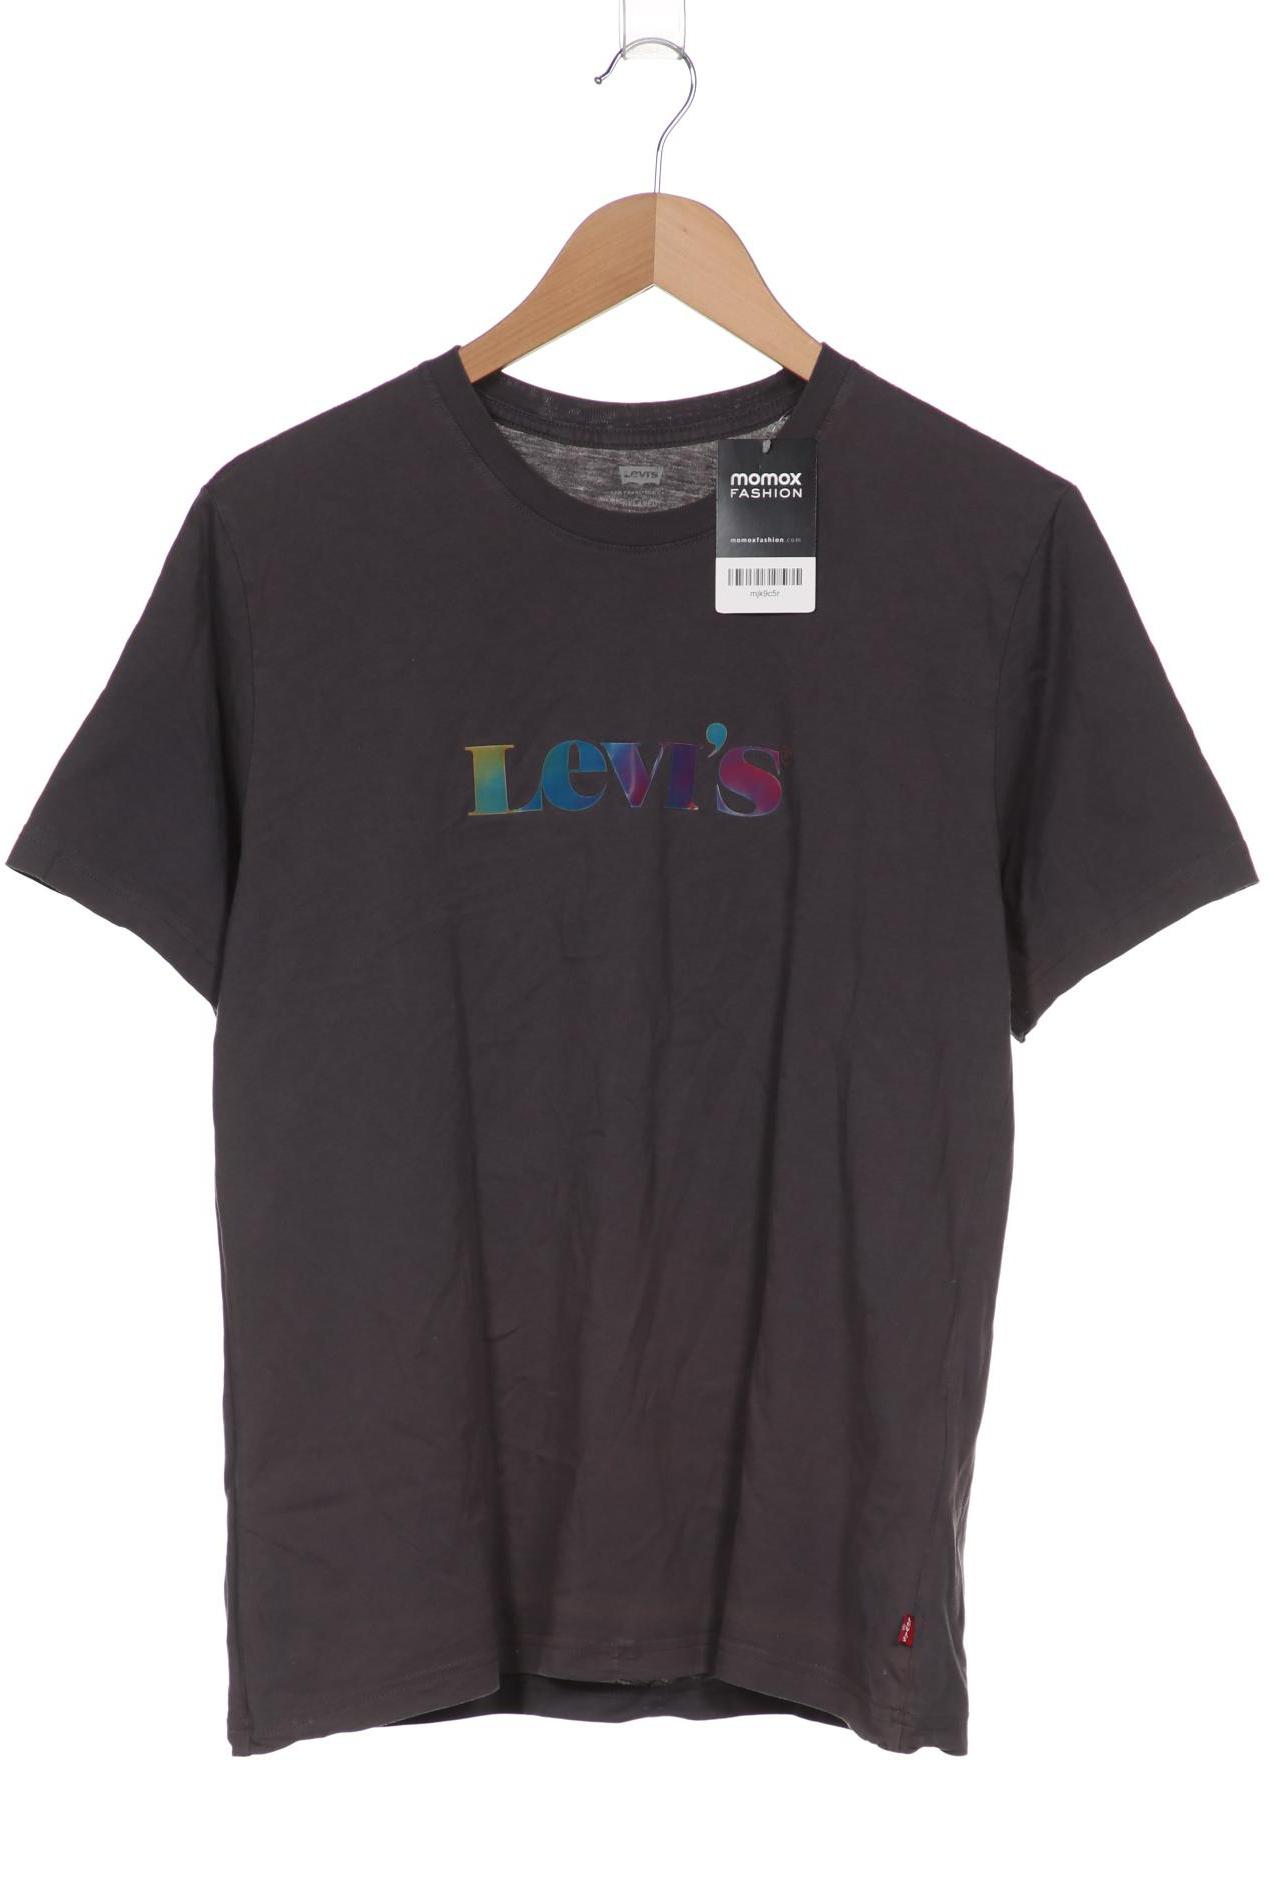 Levis Herren T-Shirt, grau von Levis